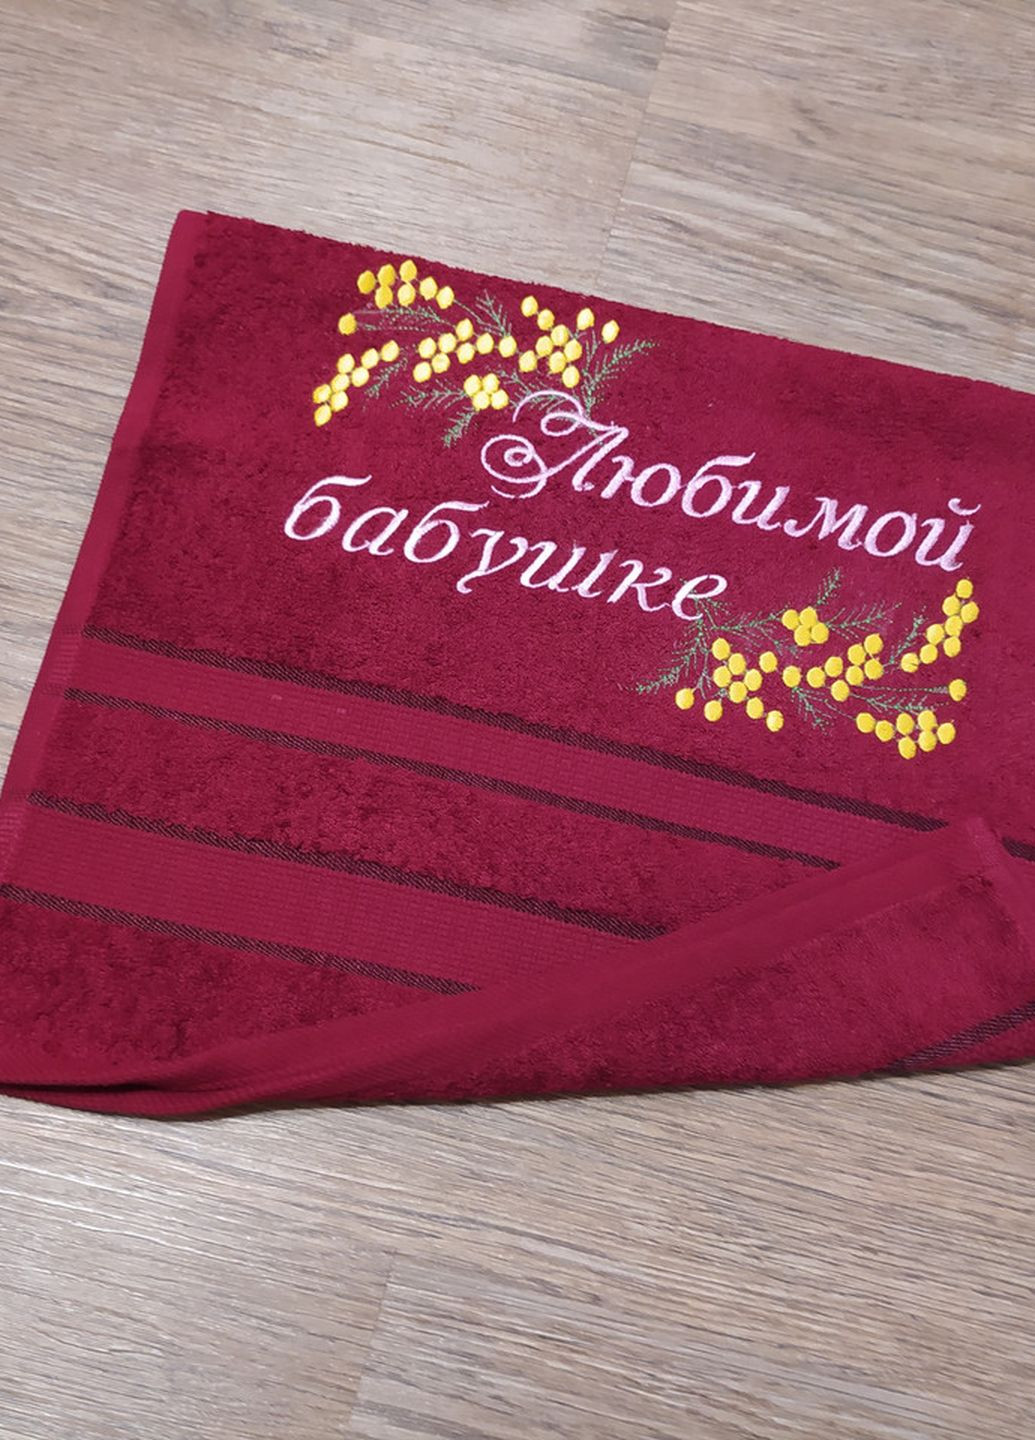 No Brand полотенце с вышивкой махровое лицевое 40*70 бордовый бабушке 00102 однотонный бордовый производство - Украина